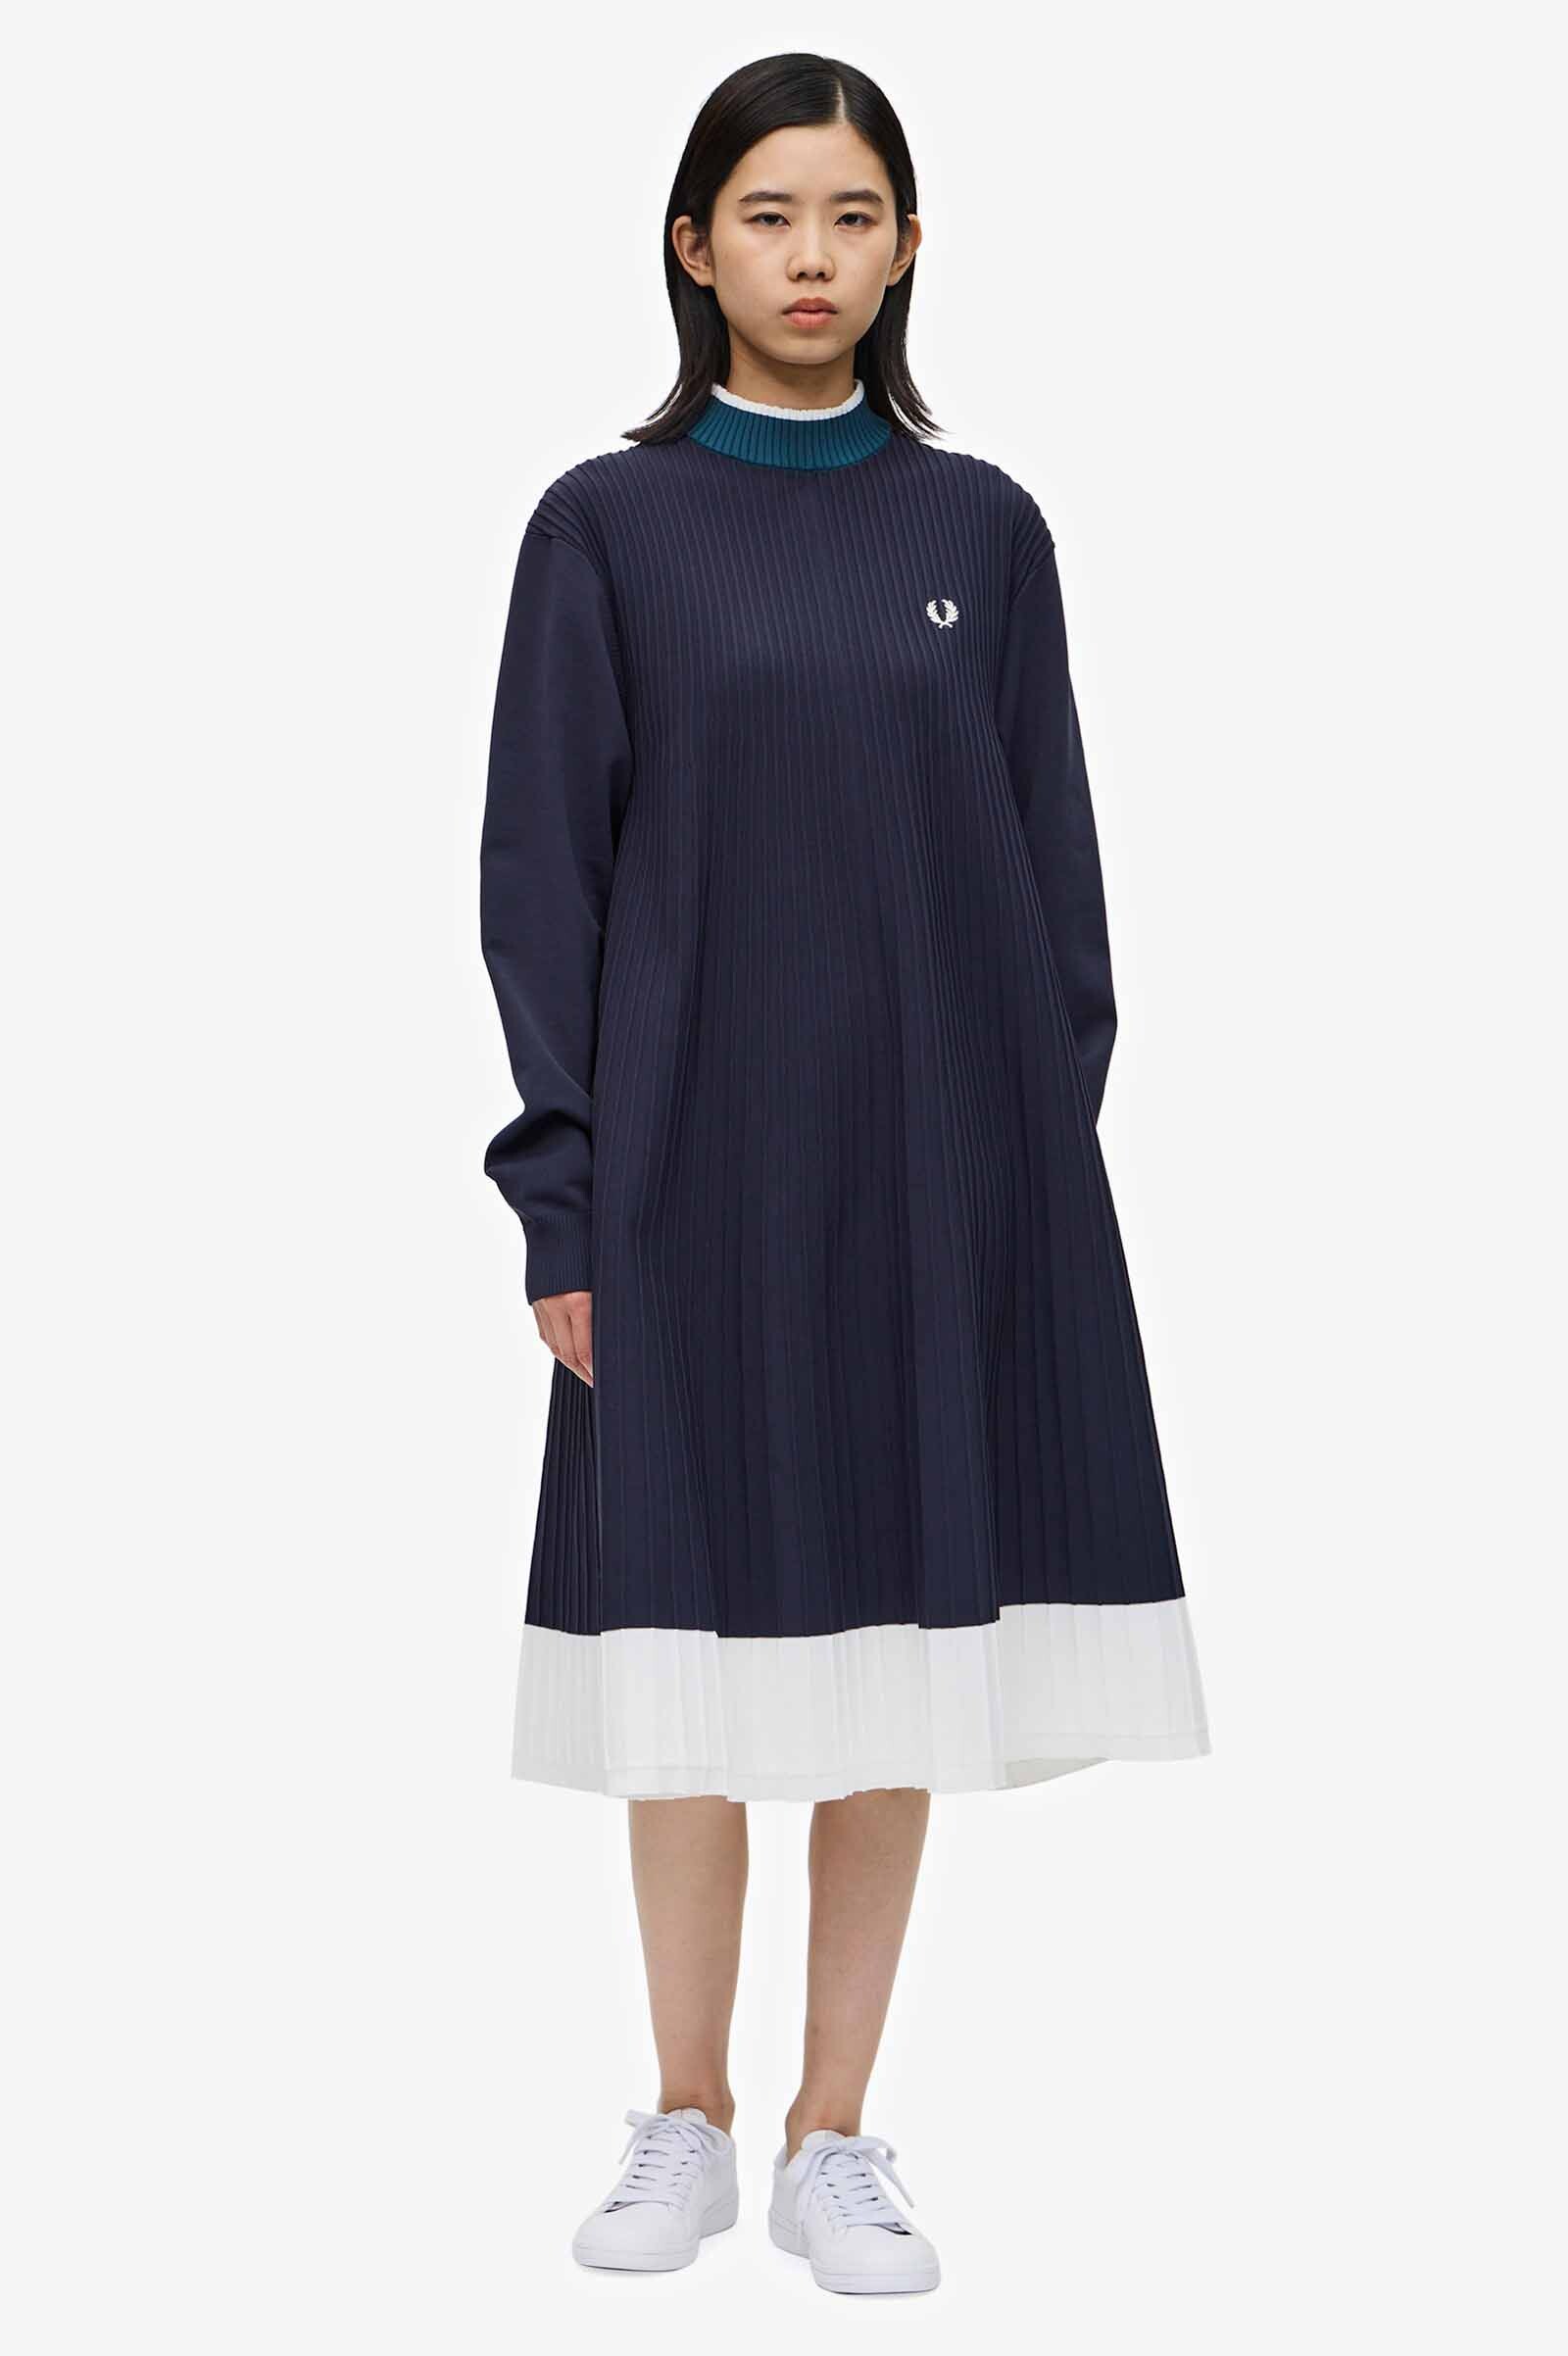 Knitted Pleated Mock Neck Dress | ショップニュース | みなとみらい ...